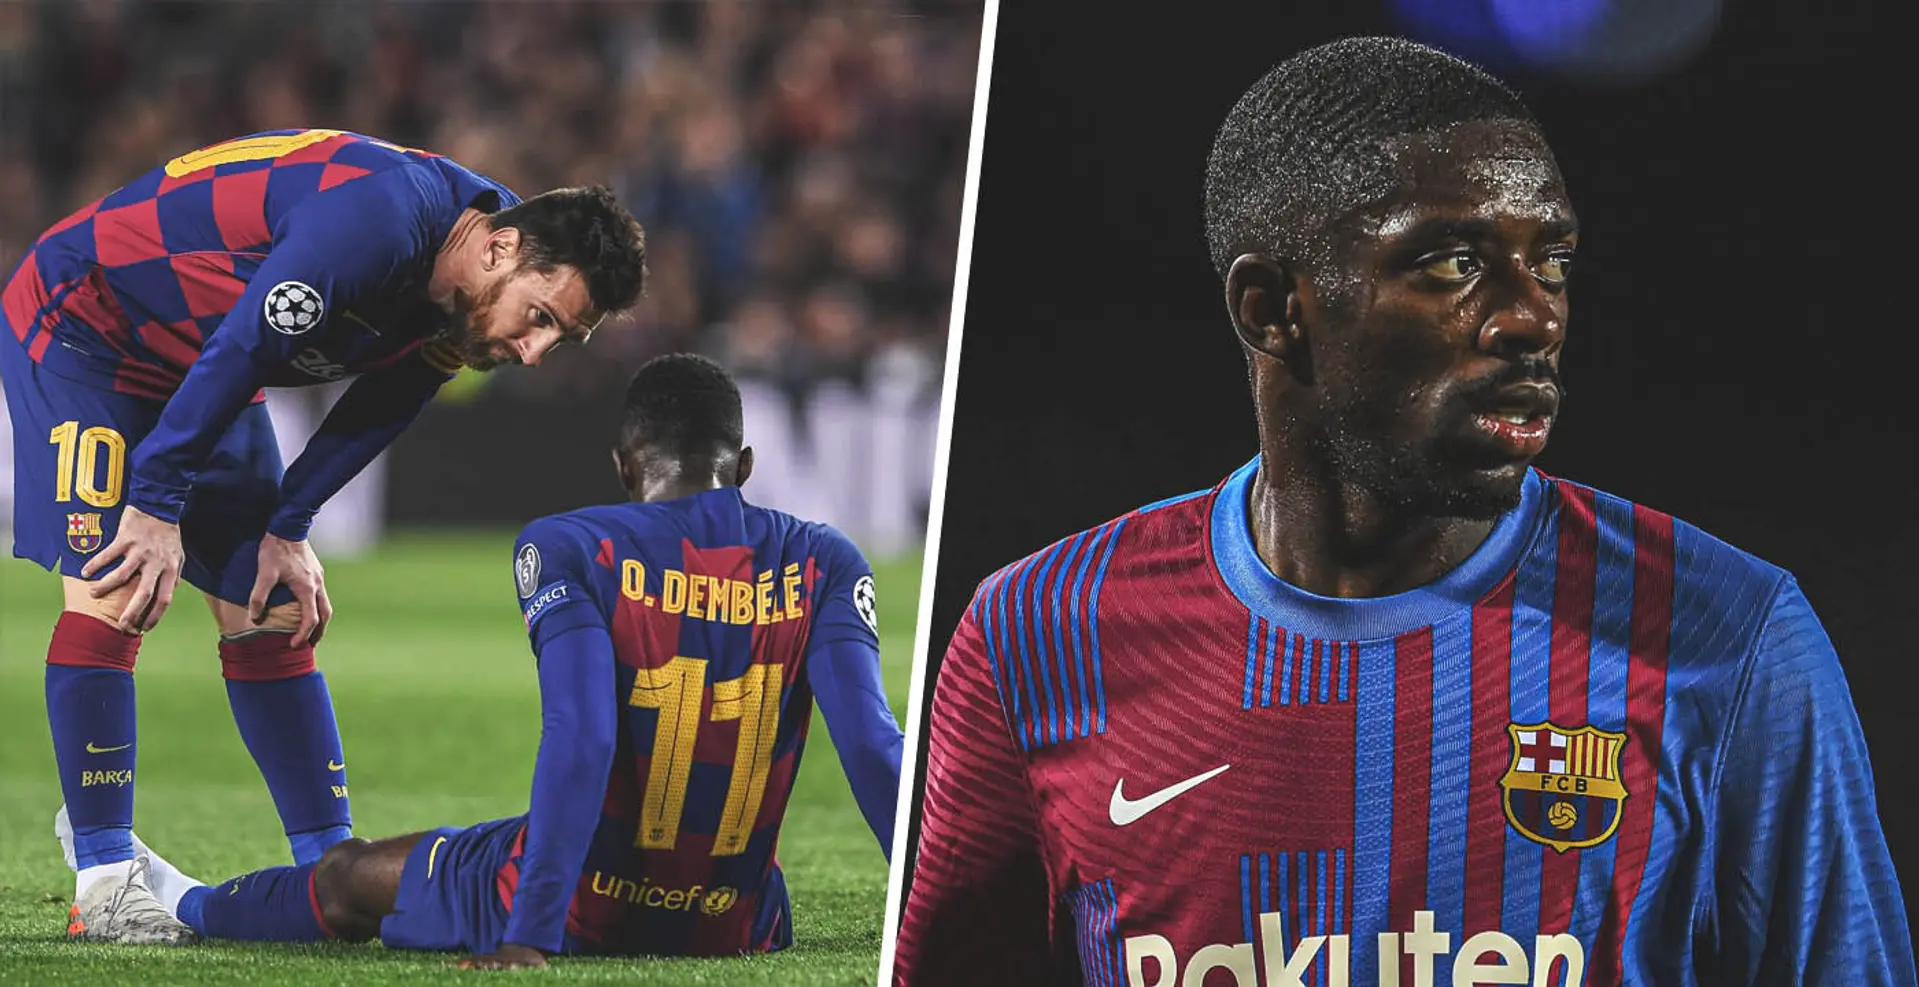 Die Verletzung von Dembele ist seine 16. bei Barça. Er hat in sechs Jahren nicht einmal die Hälfte der Spiele absolviert, aber trotzdem 40 Millionen Euro verdient